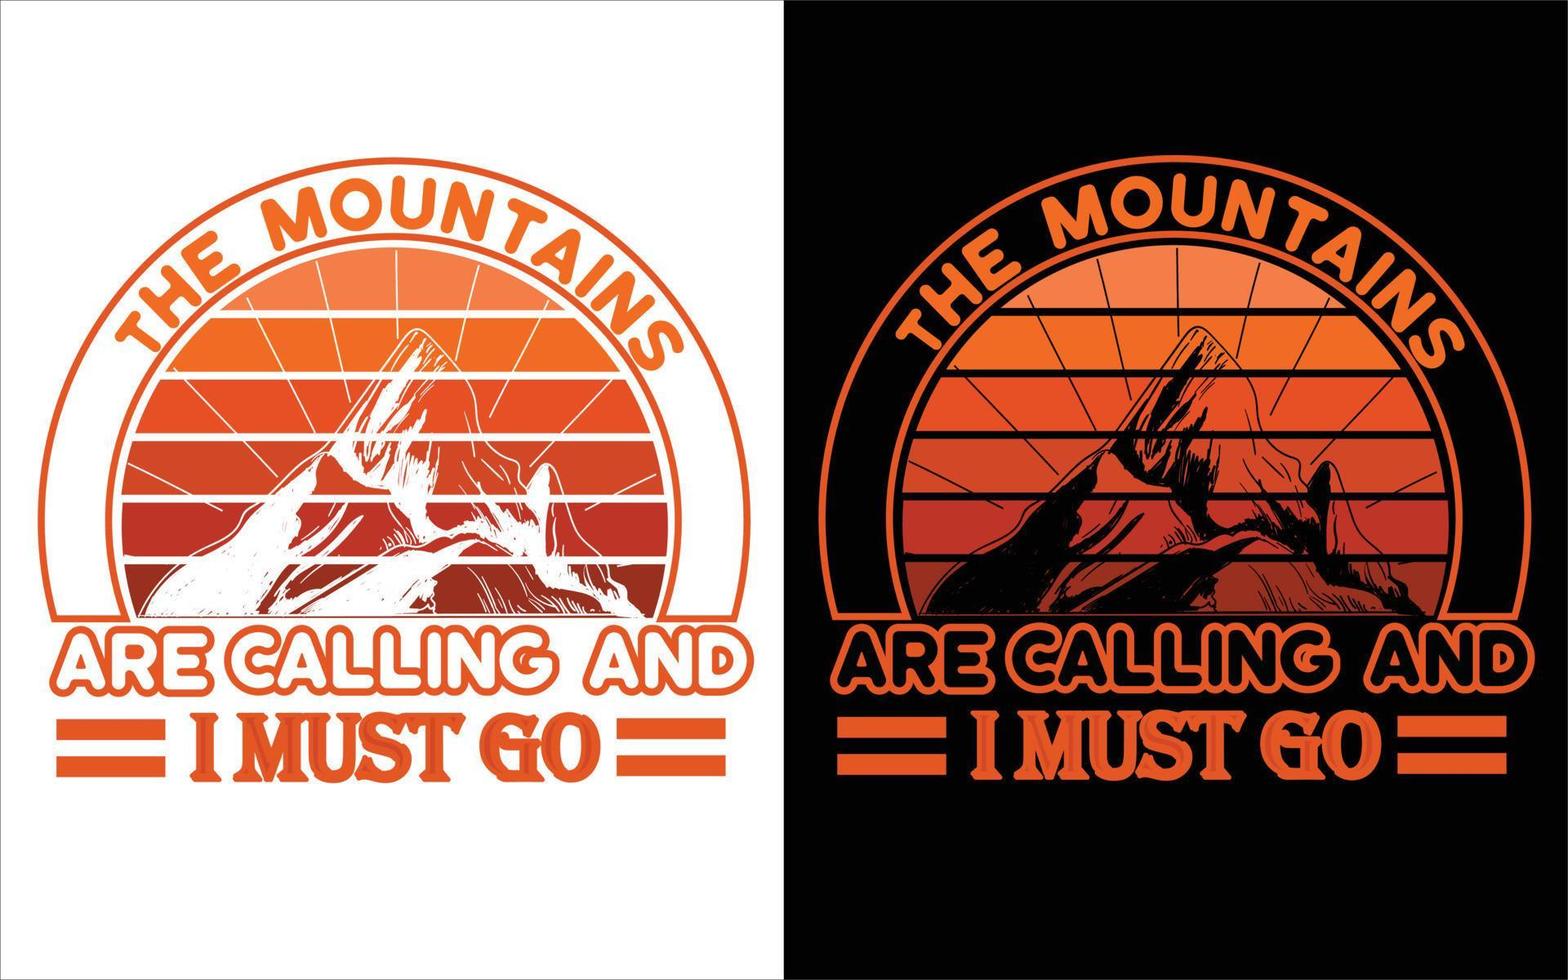 Mountains T-shirt design free vector. vector